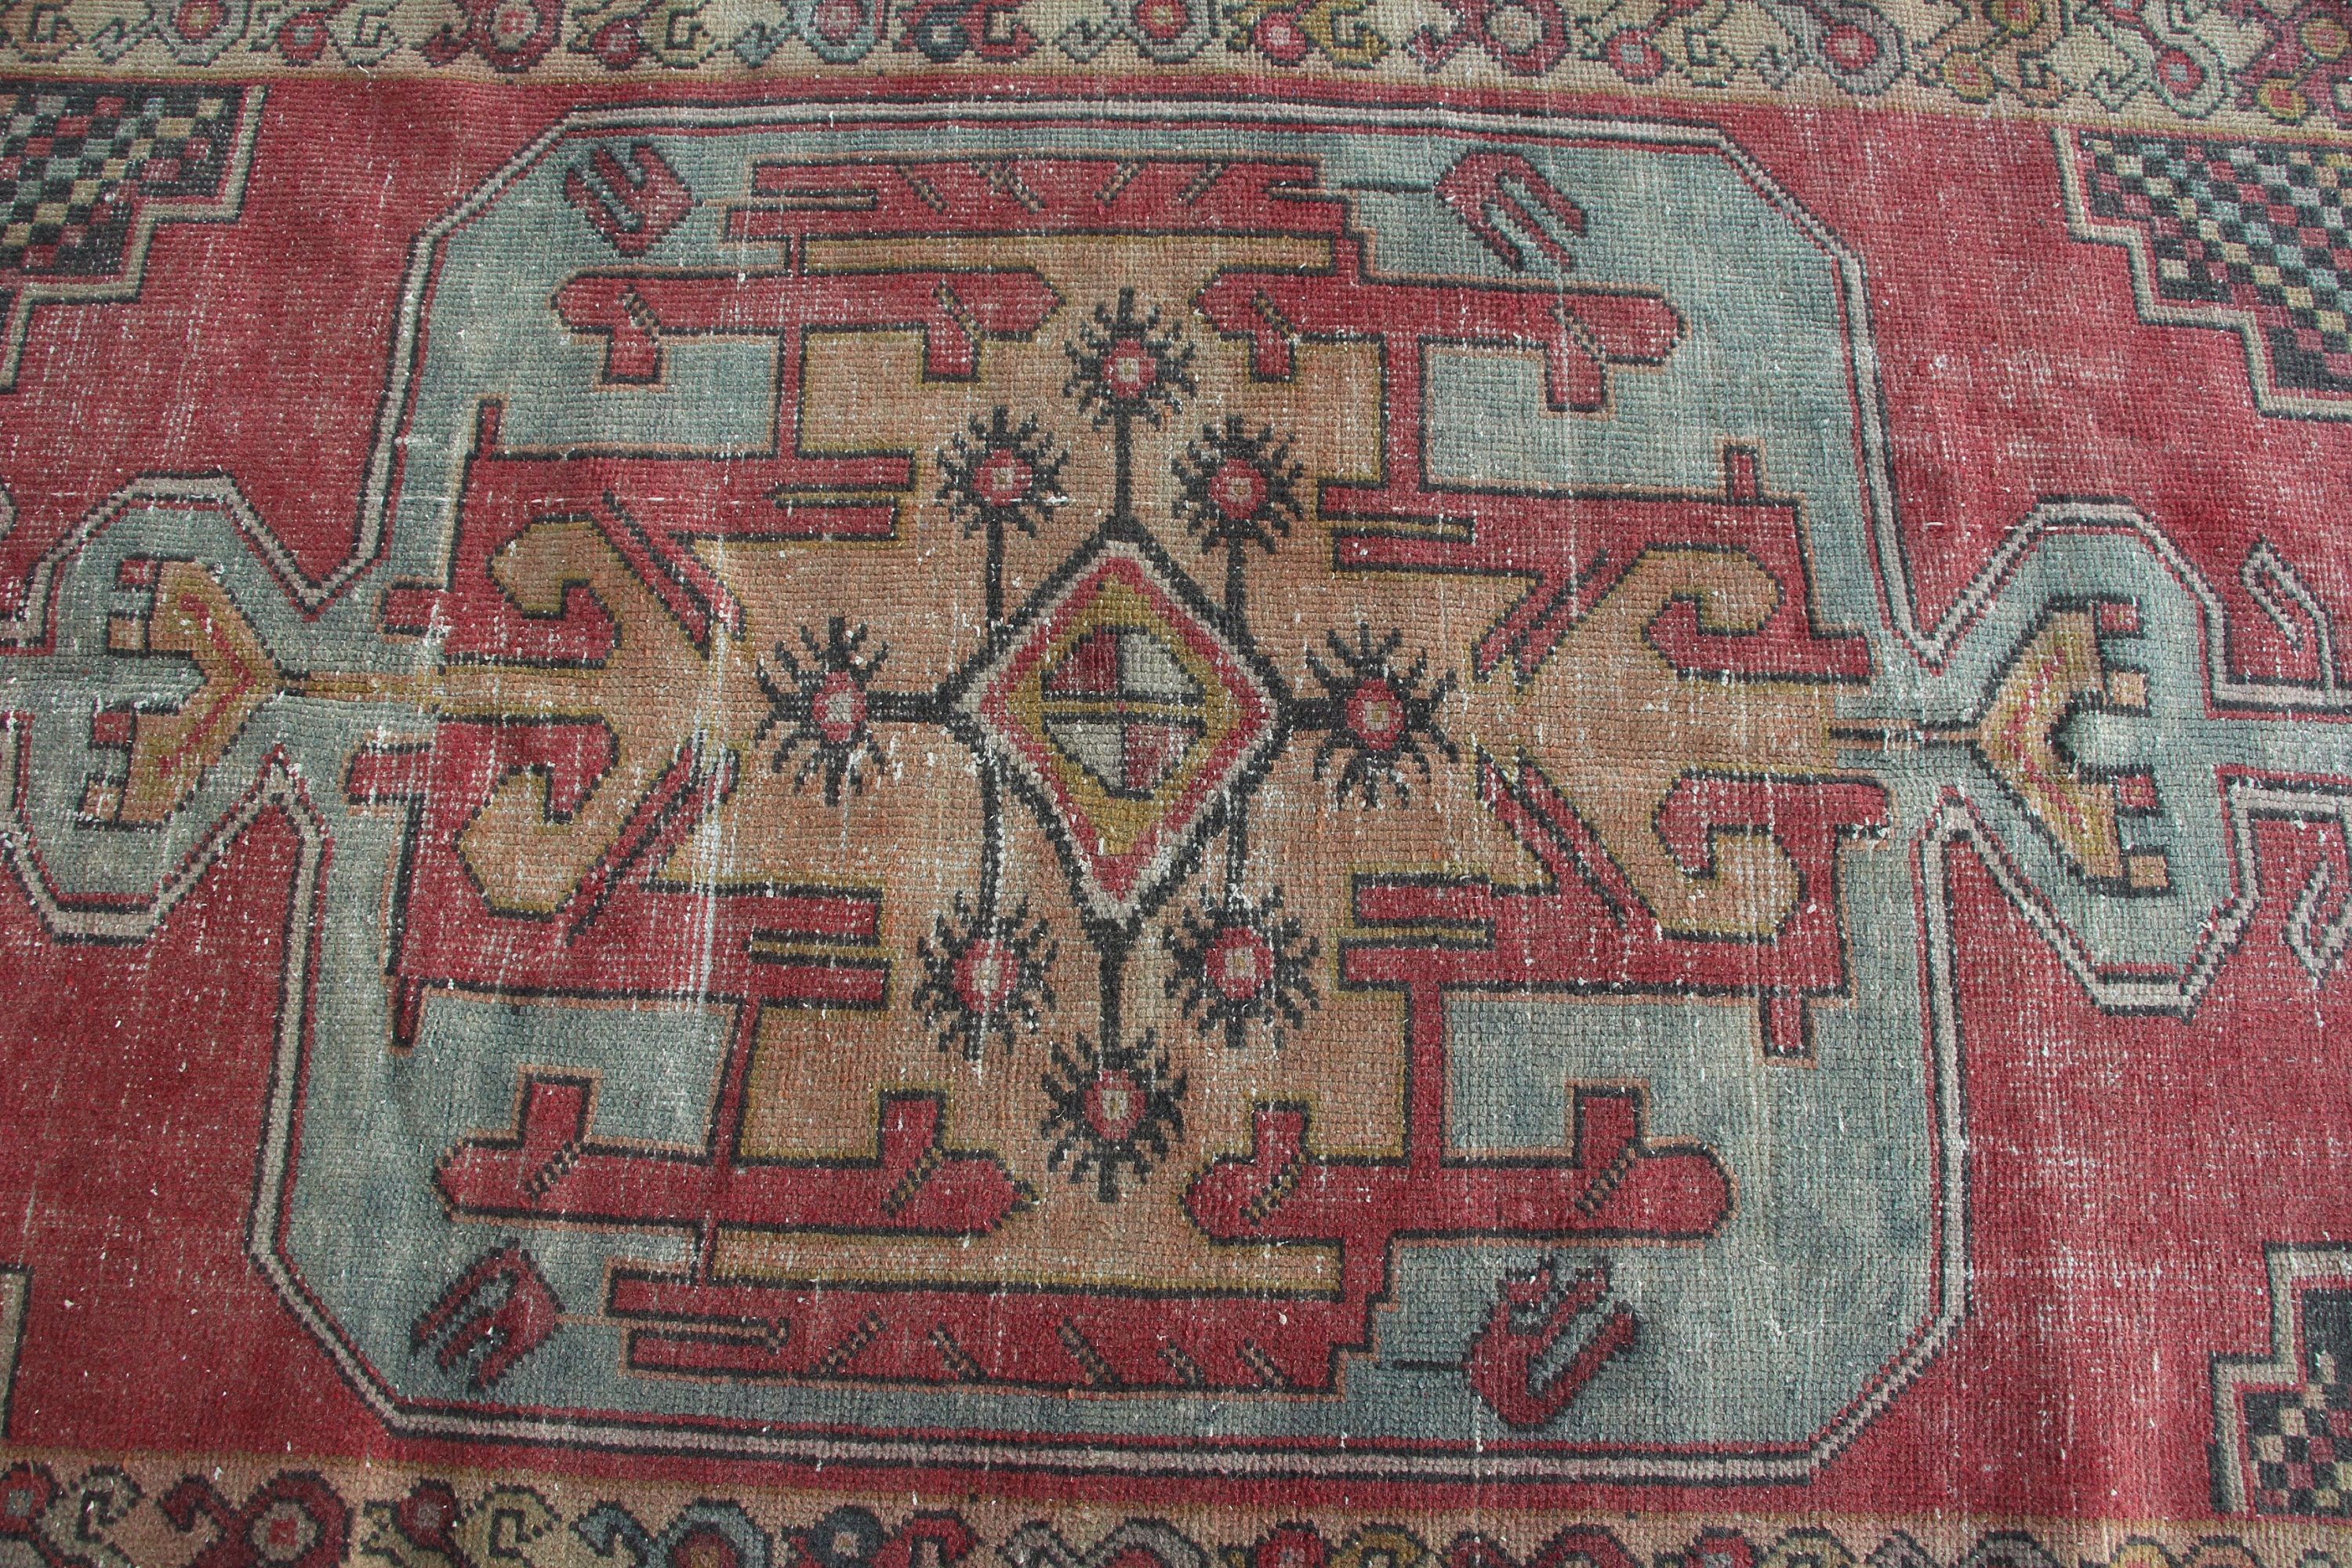 Oriental Rug, Vintage Rug, Rugs for Dining Room, Turkish Rug, Floor Rugs, Red Wool Rug, 3.8x8.5 ft Area Rug, Dining Room Rugs, Kitchen Rug